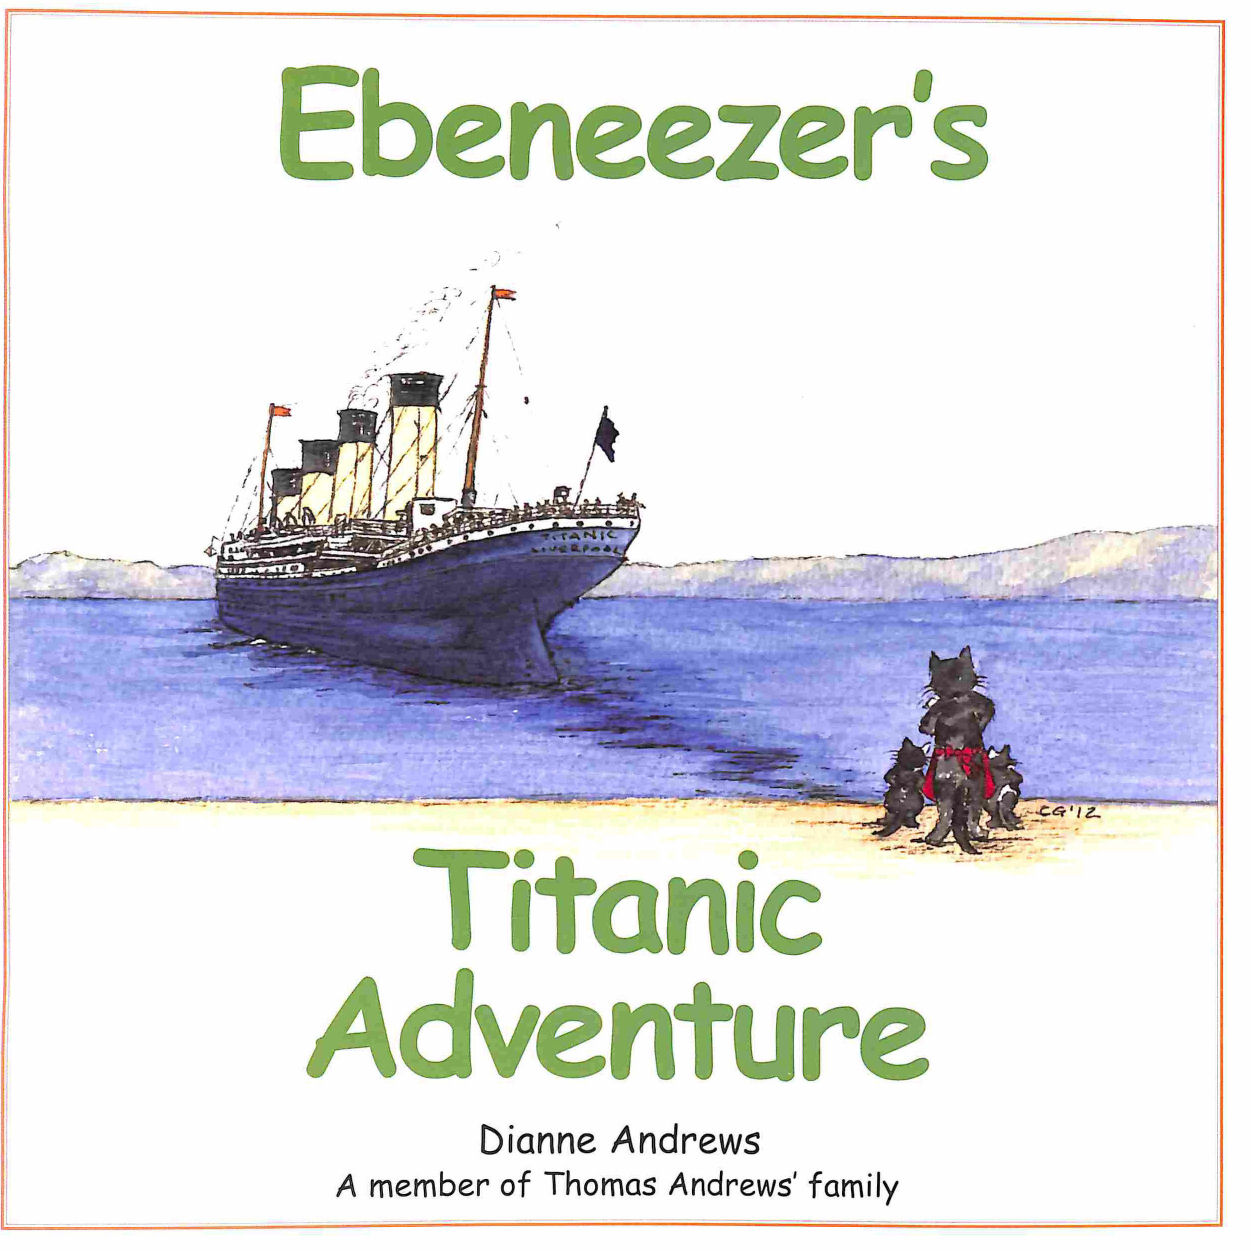 ANDREWS, DIANNE; GILMORE, CAROL [ILLUSTRATOR] - Ebeneezer's Titanic Adventure (Ebeneezer Stories)